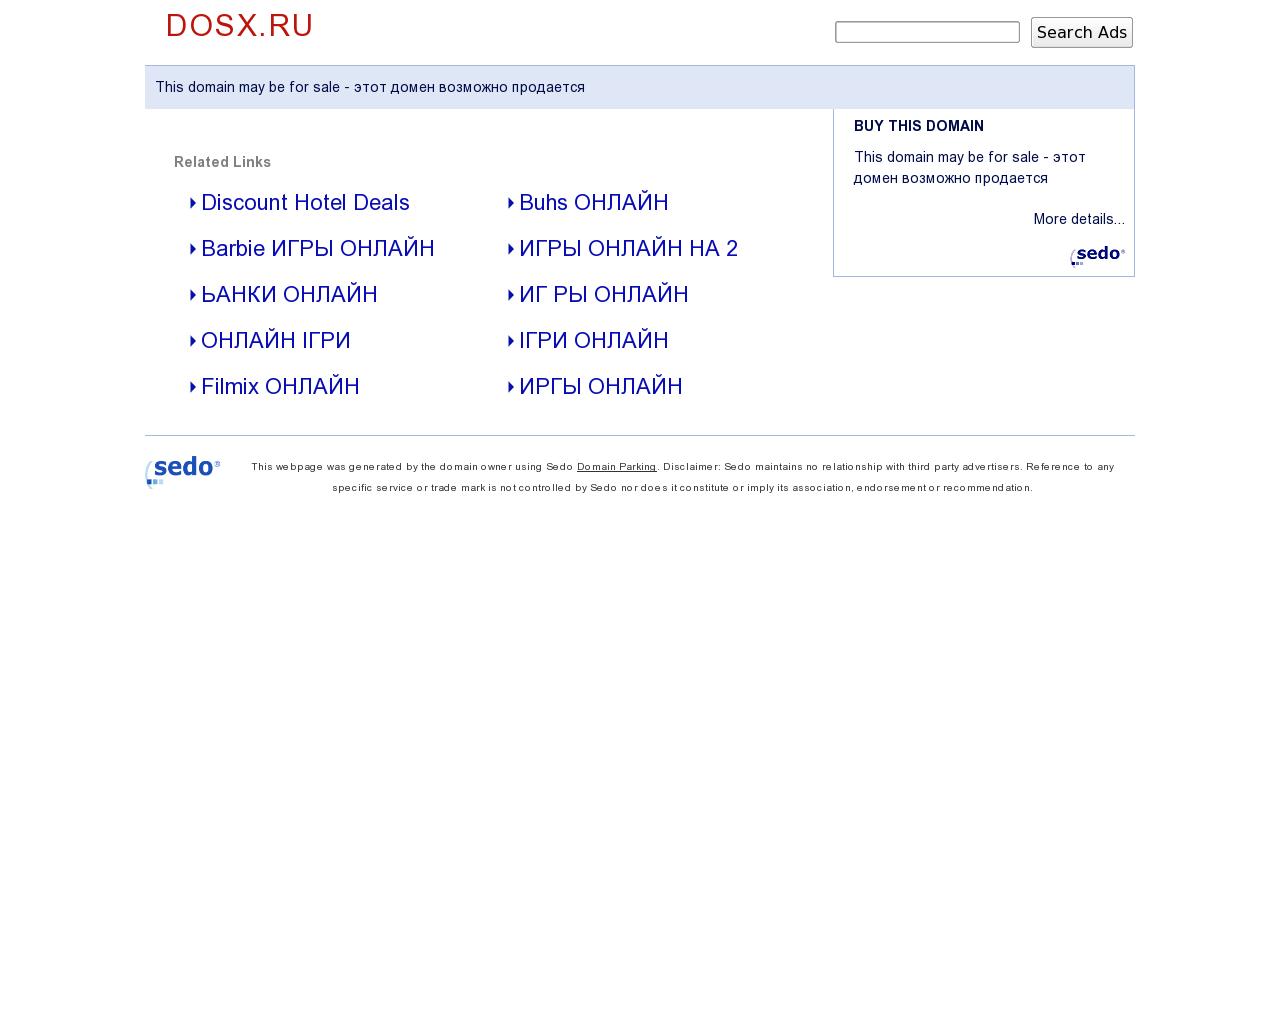 Изображение сайта dosx.ru в разрешении 1280x1024